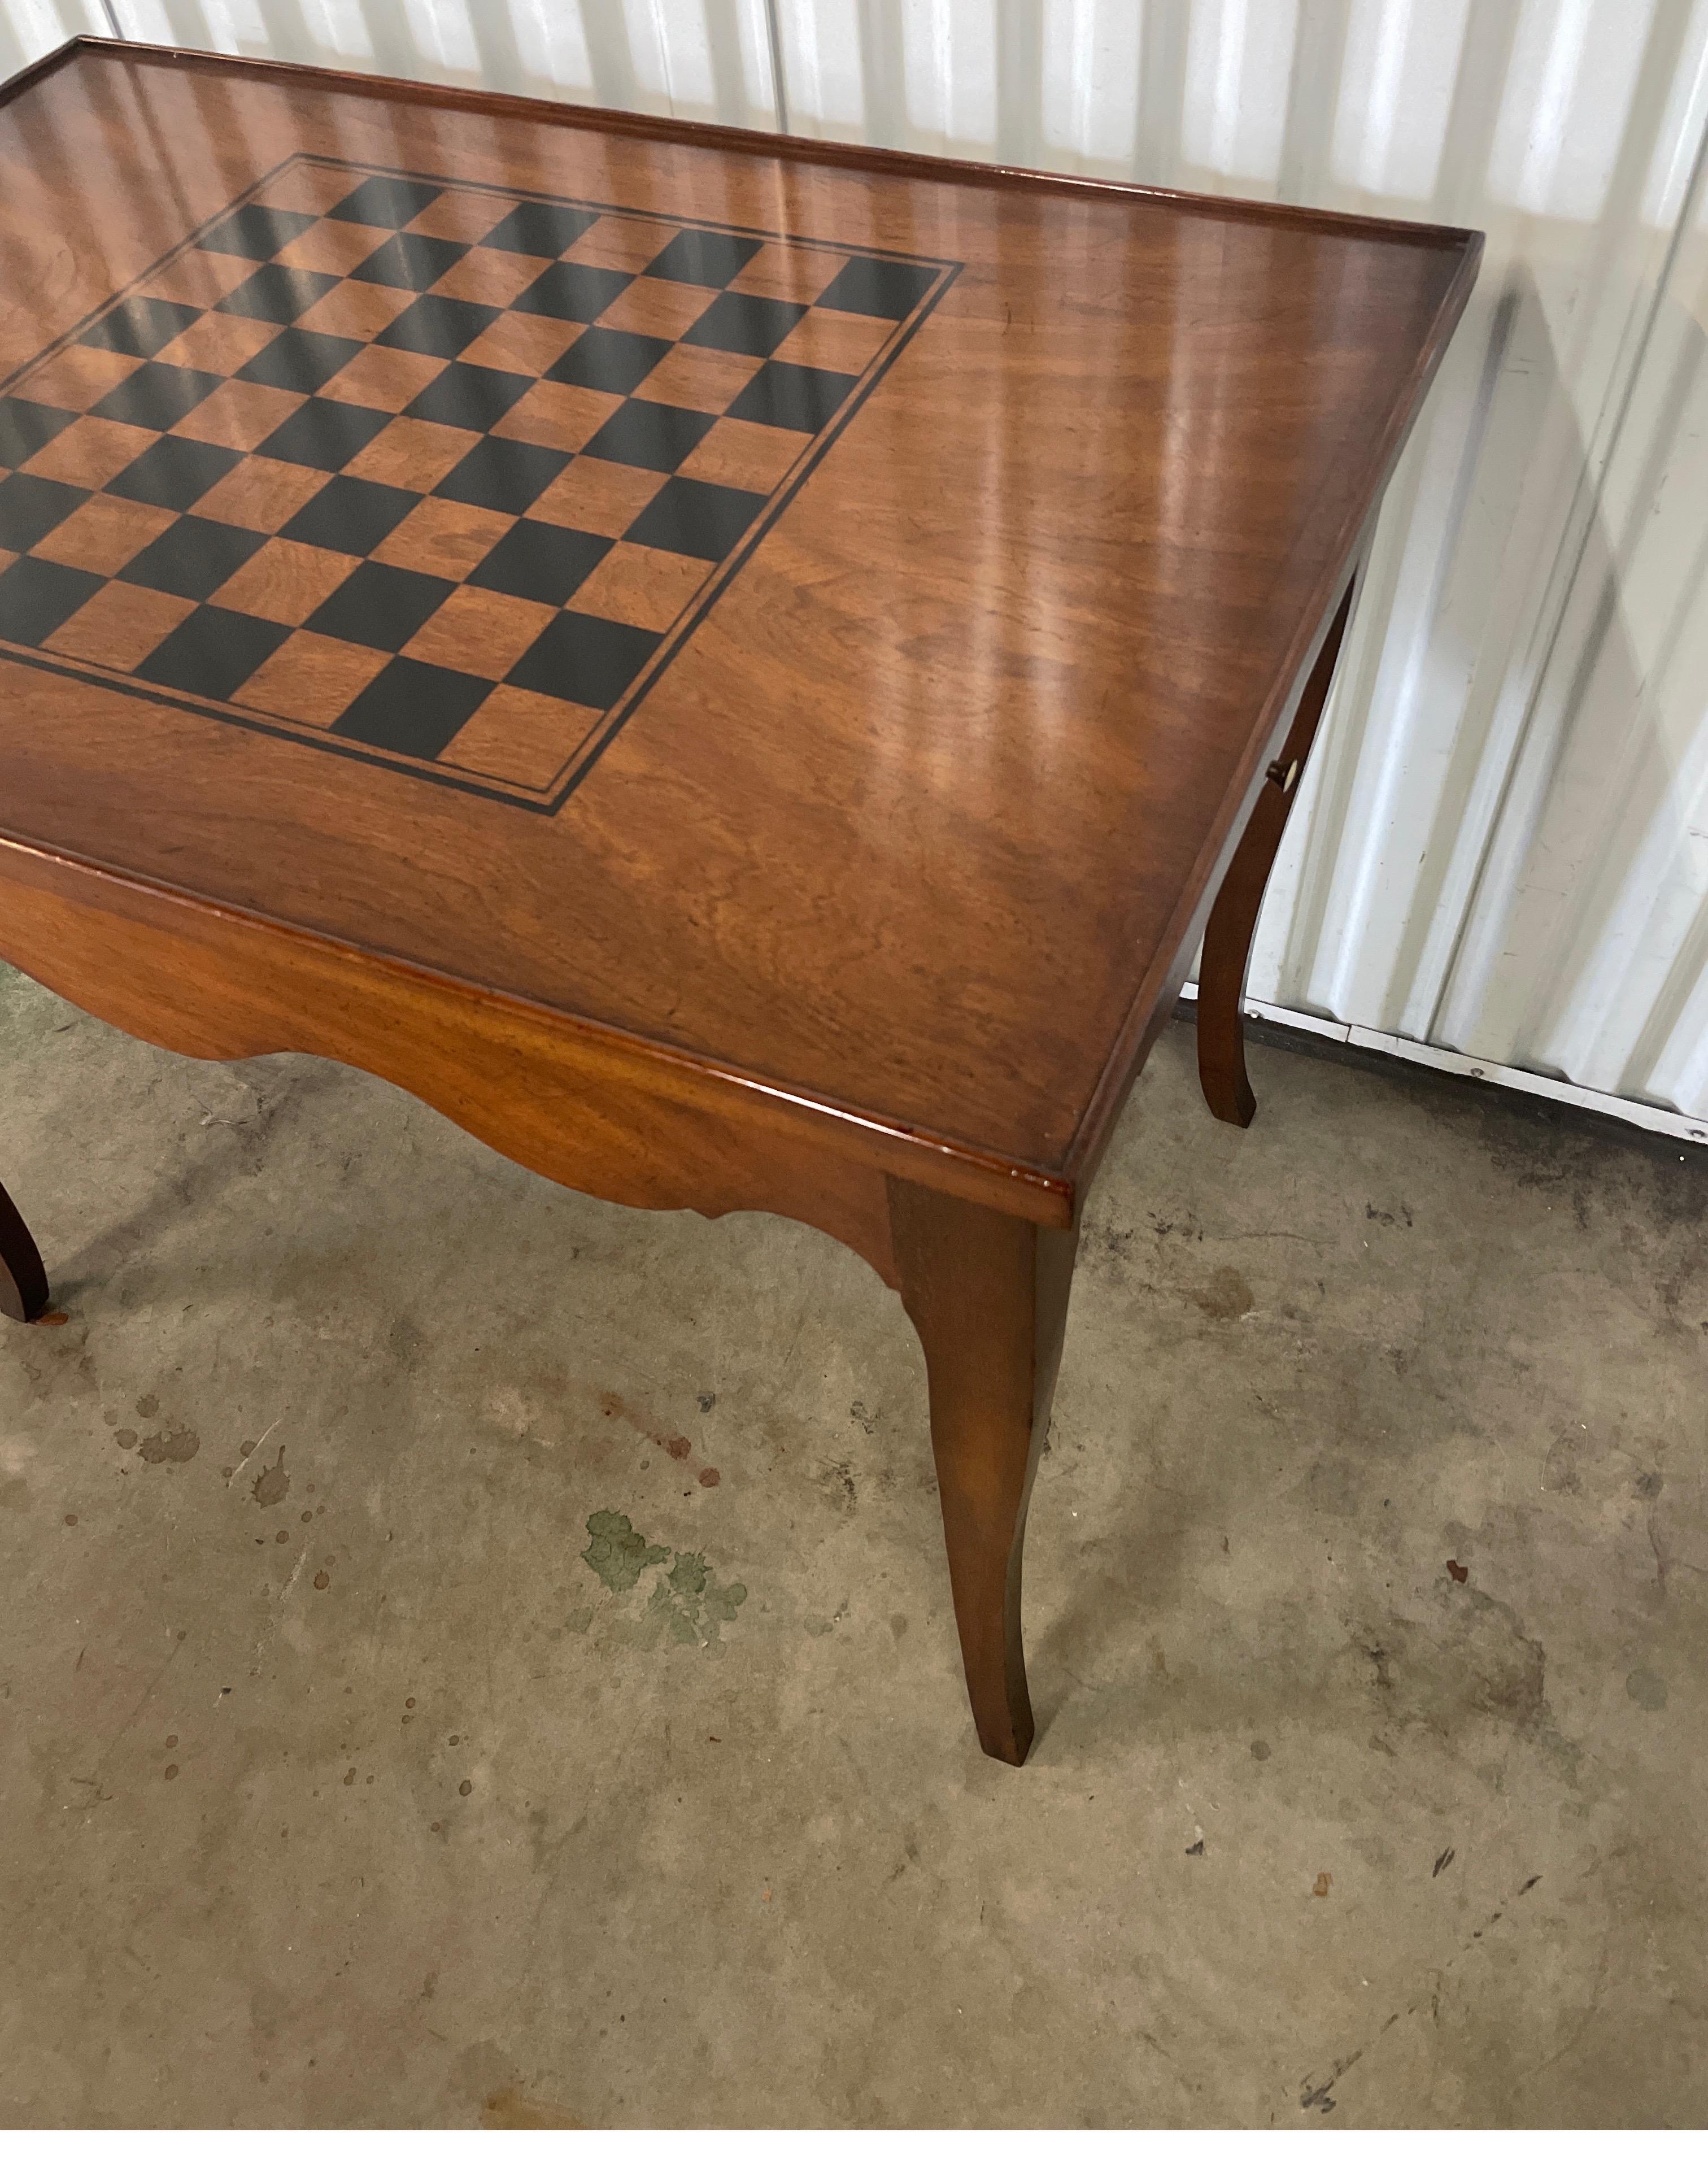 Spieltisch im Stil von Louis XV mit einer Schachbrettplatte. Der Deckel lässt sich abnehmen, um das Innere des Backgammons zu enthüllen. Es gibt eine Schürze mit Wellenschliff und Auszüge auf jeder Seite.